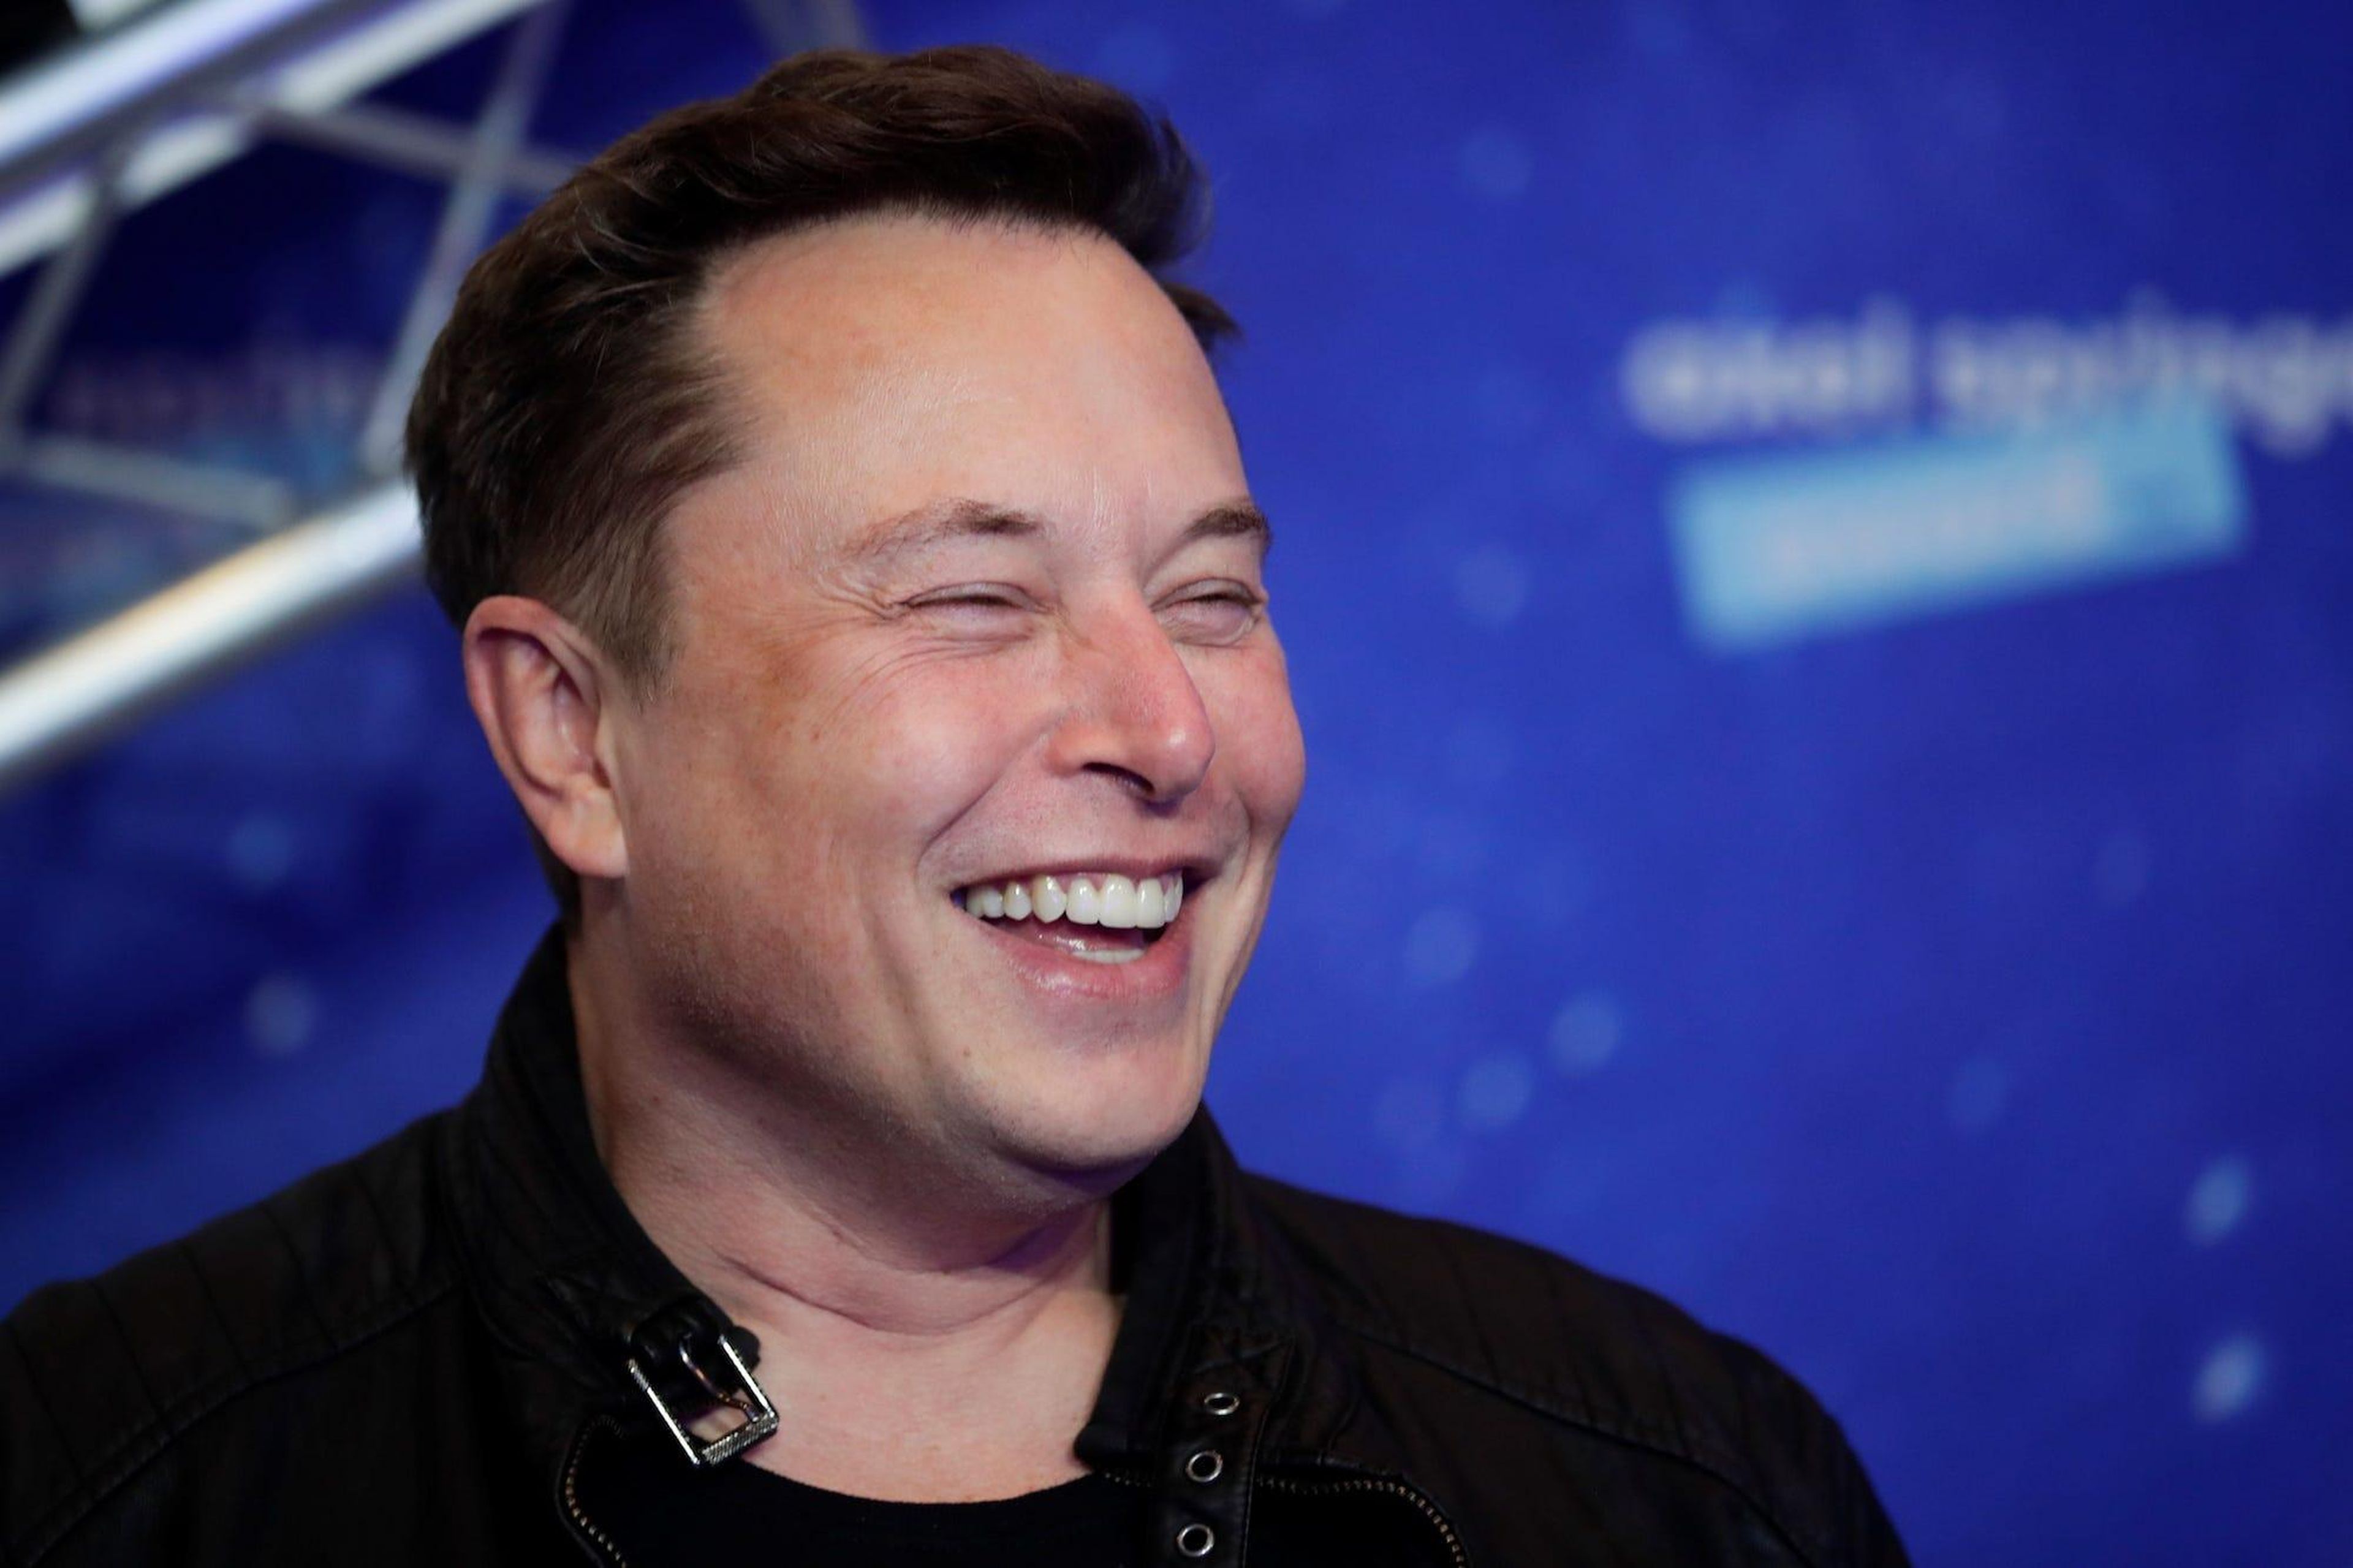 Musk espera poder llevar a un millón de personas a Marte en 2050 con los cohetes de SpaceX.